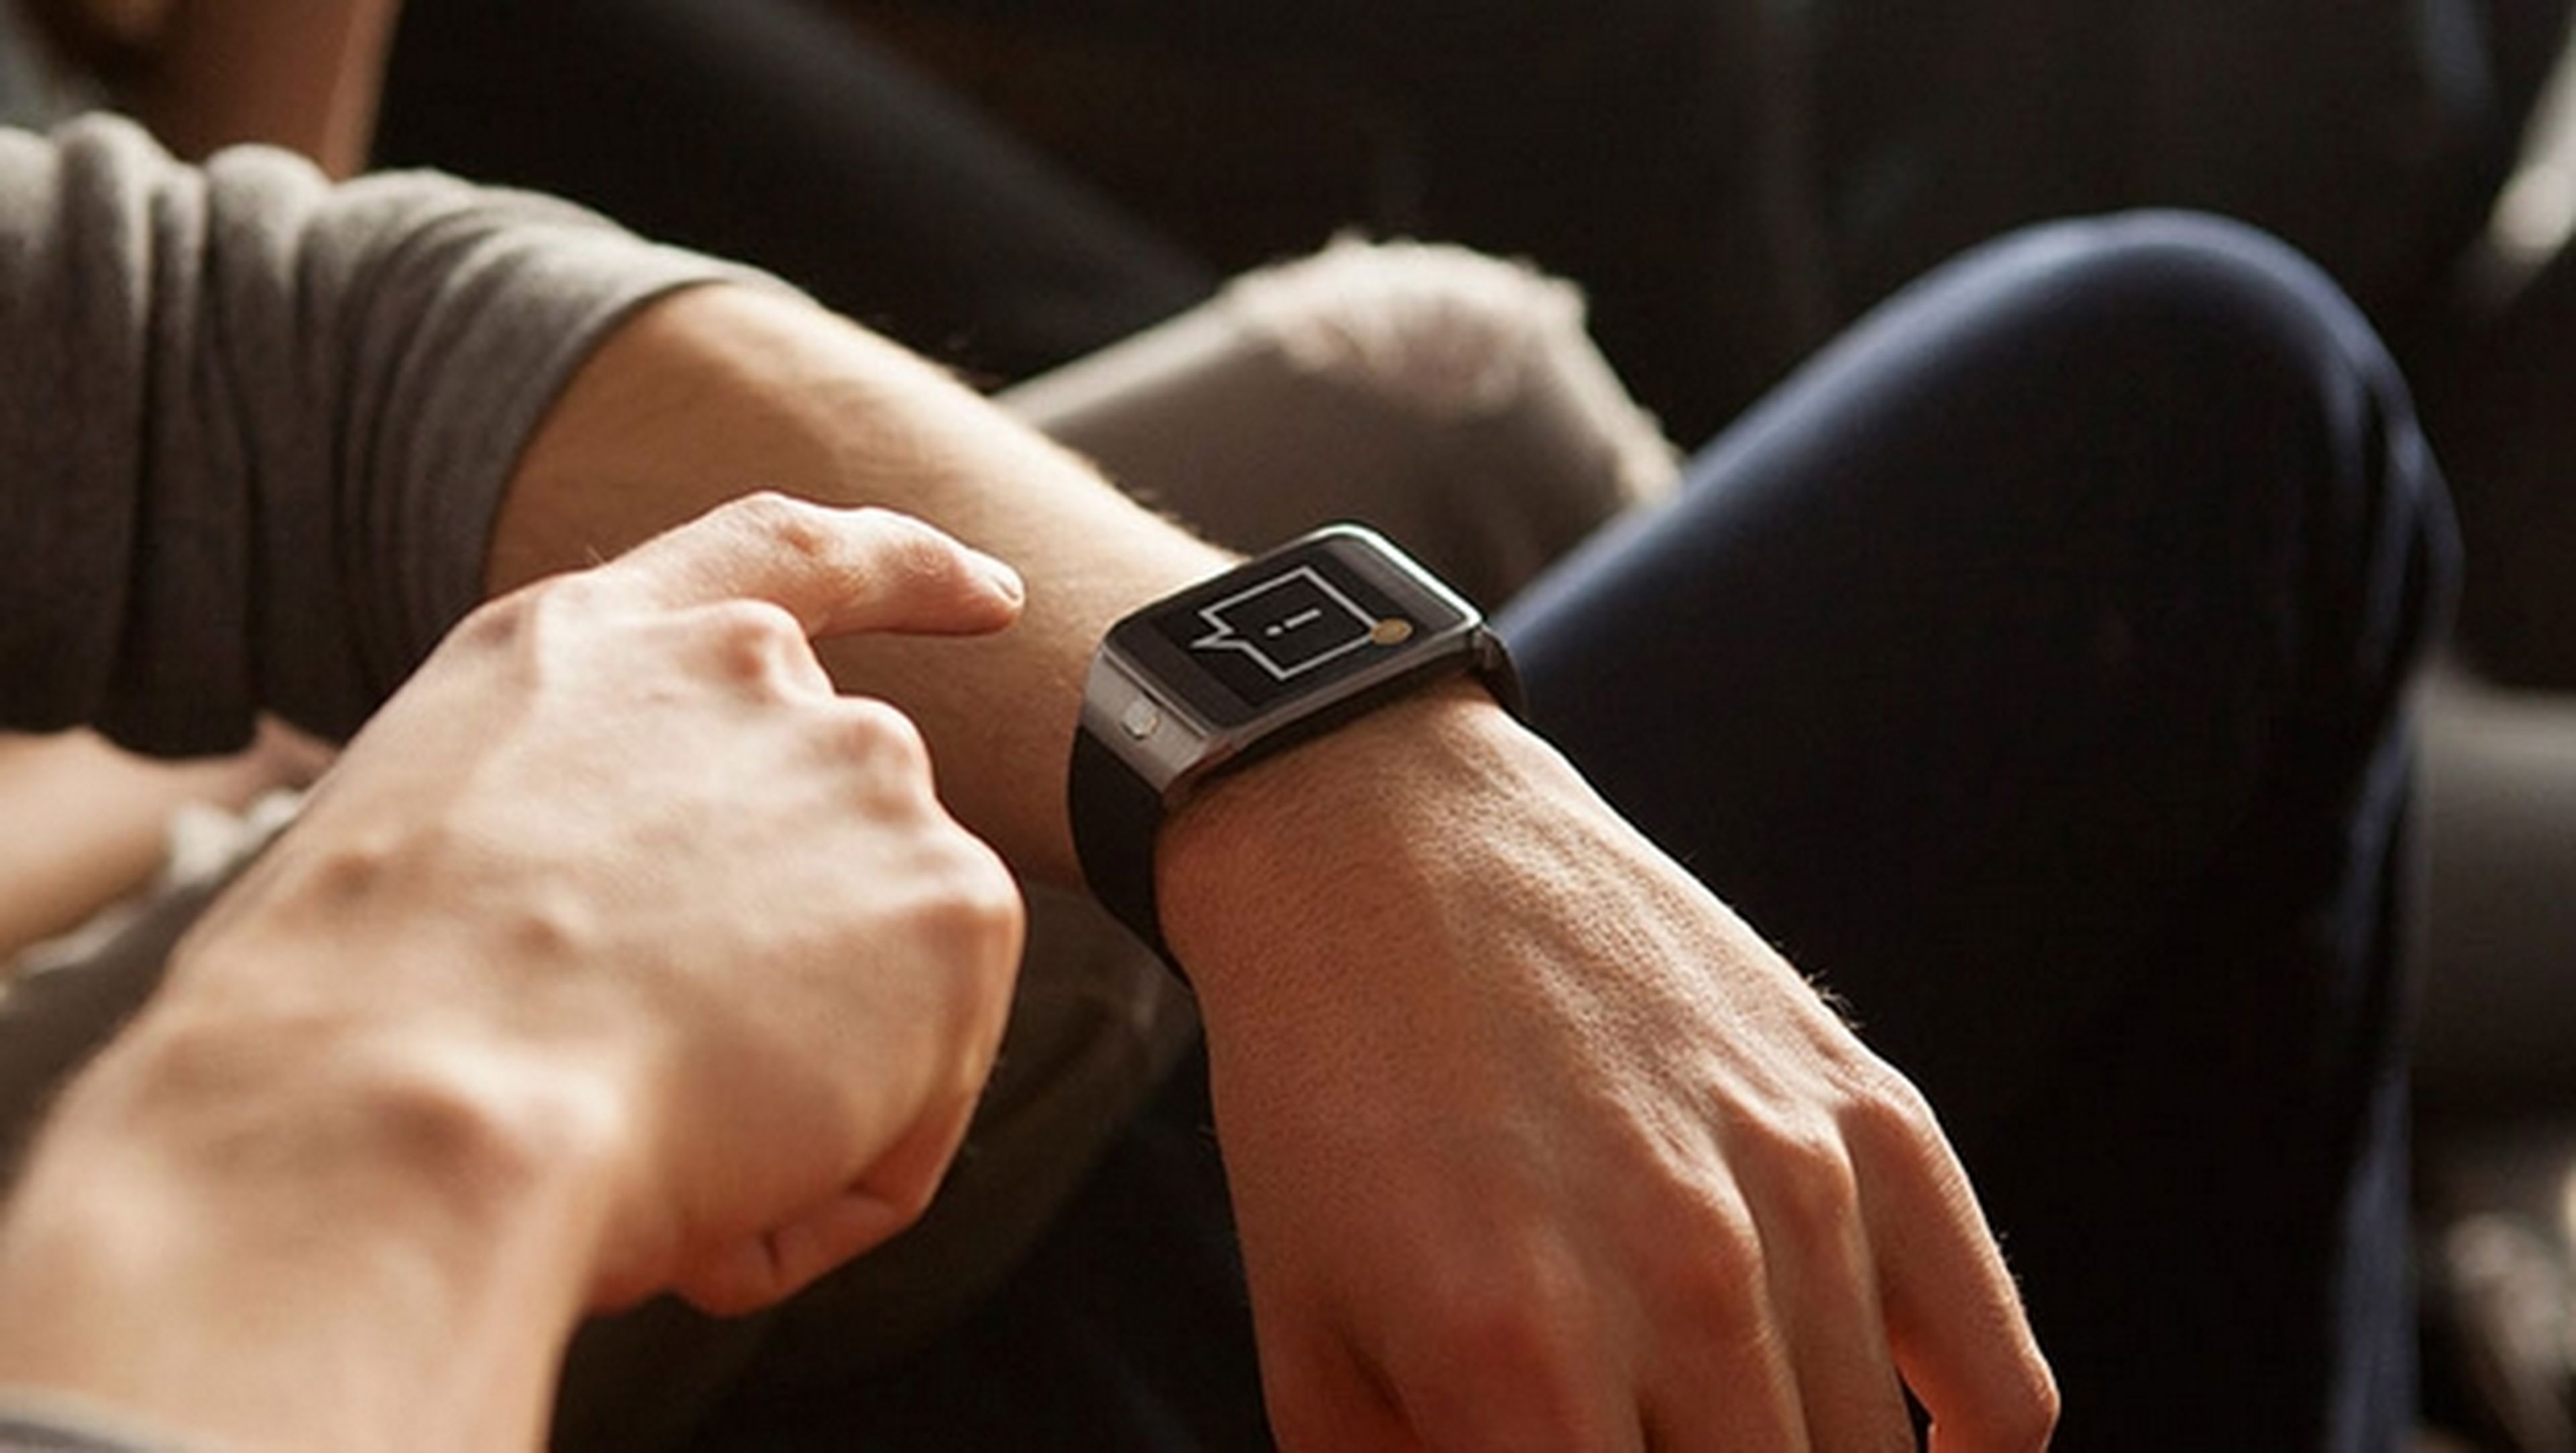 Samsung podría presentar un smartwatch o reloj inteligente con Android Wear la semana que viene en la conferencia Google I/O.